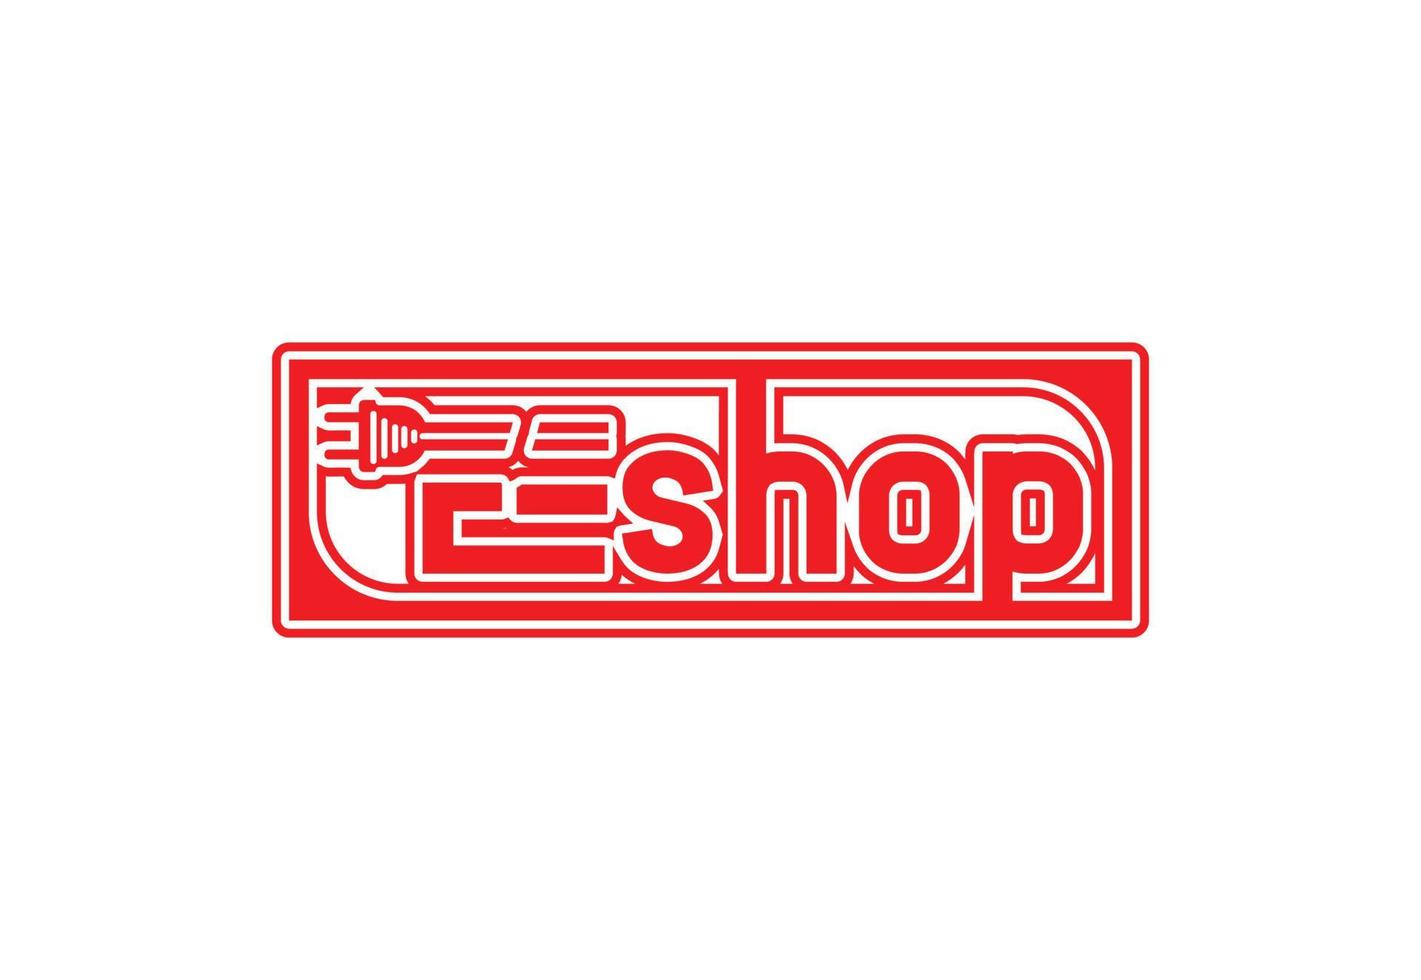 E shop logo and sticker design template vector